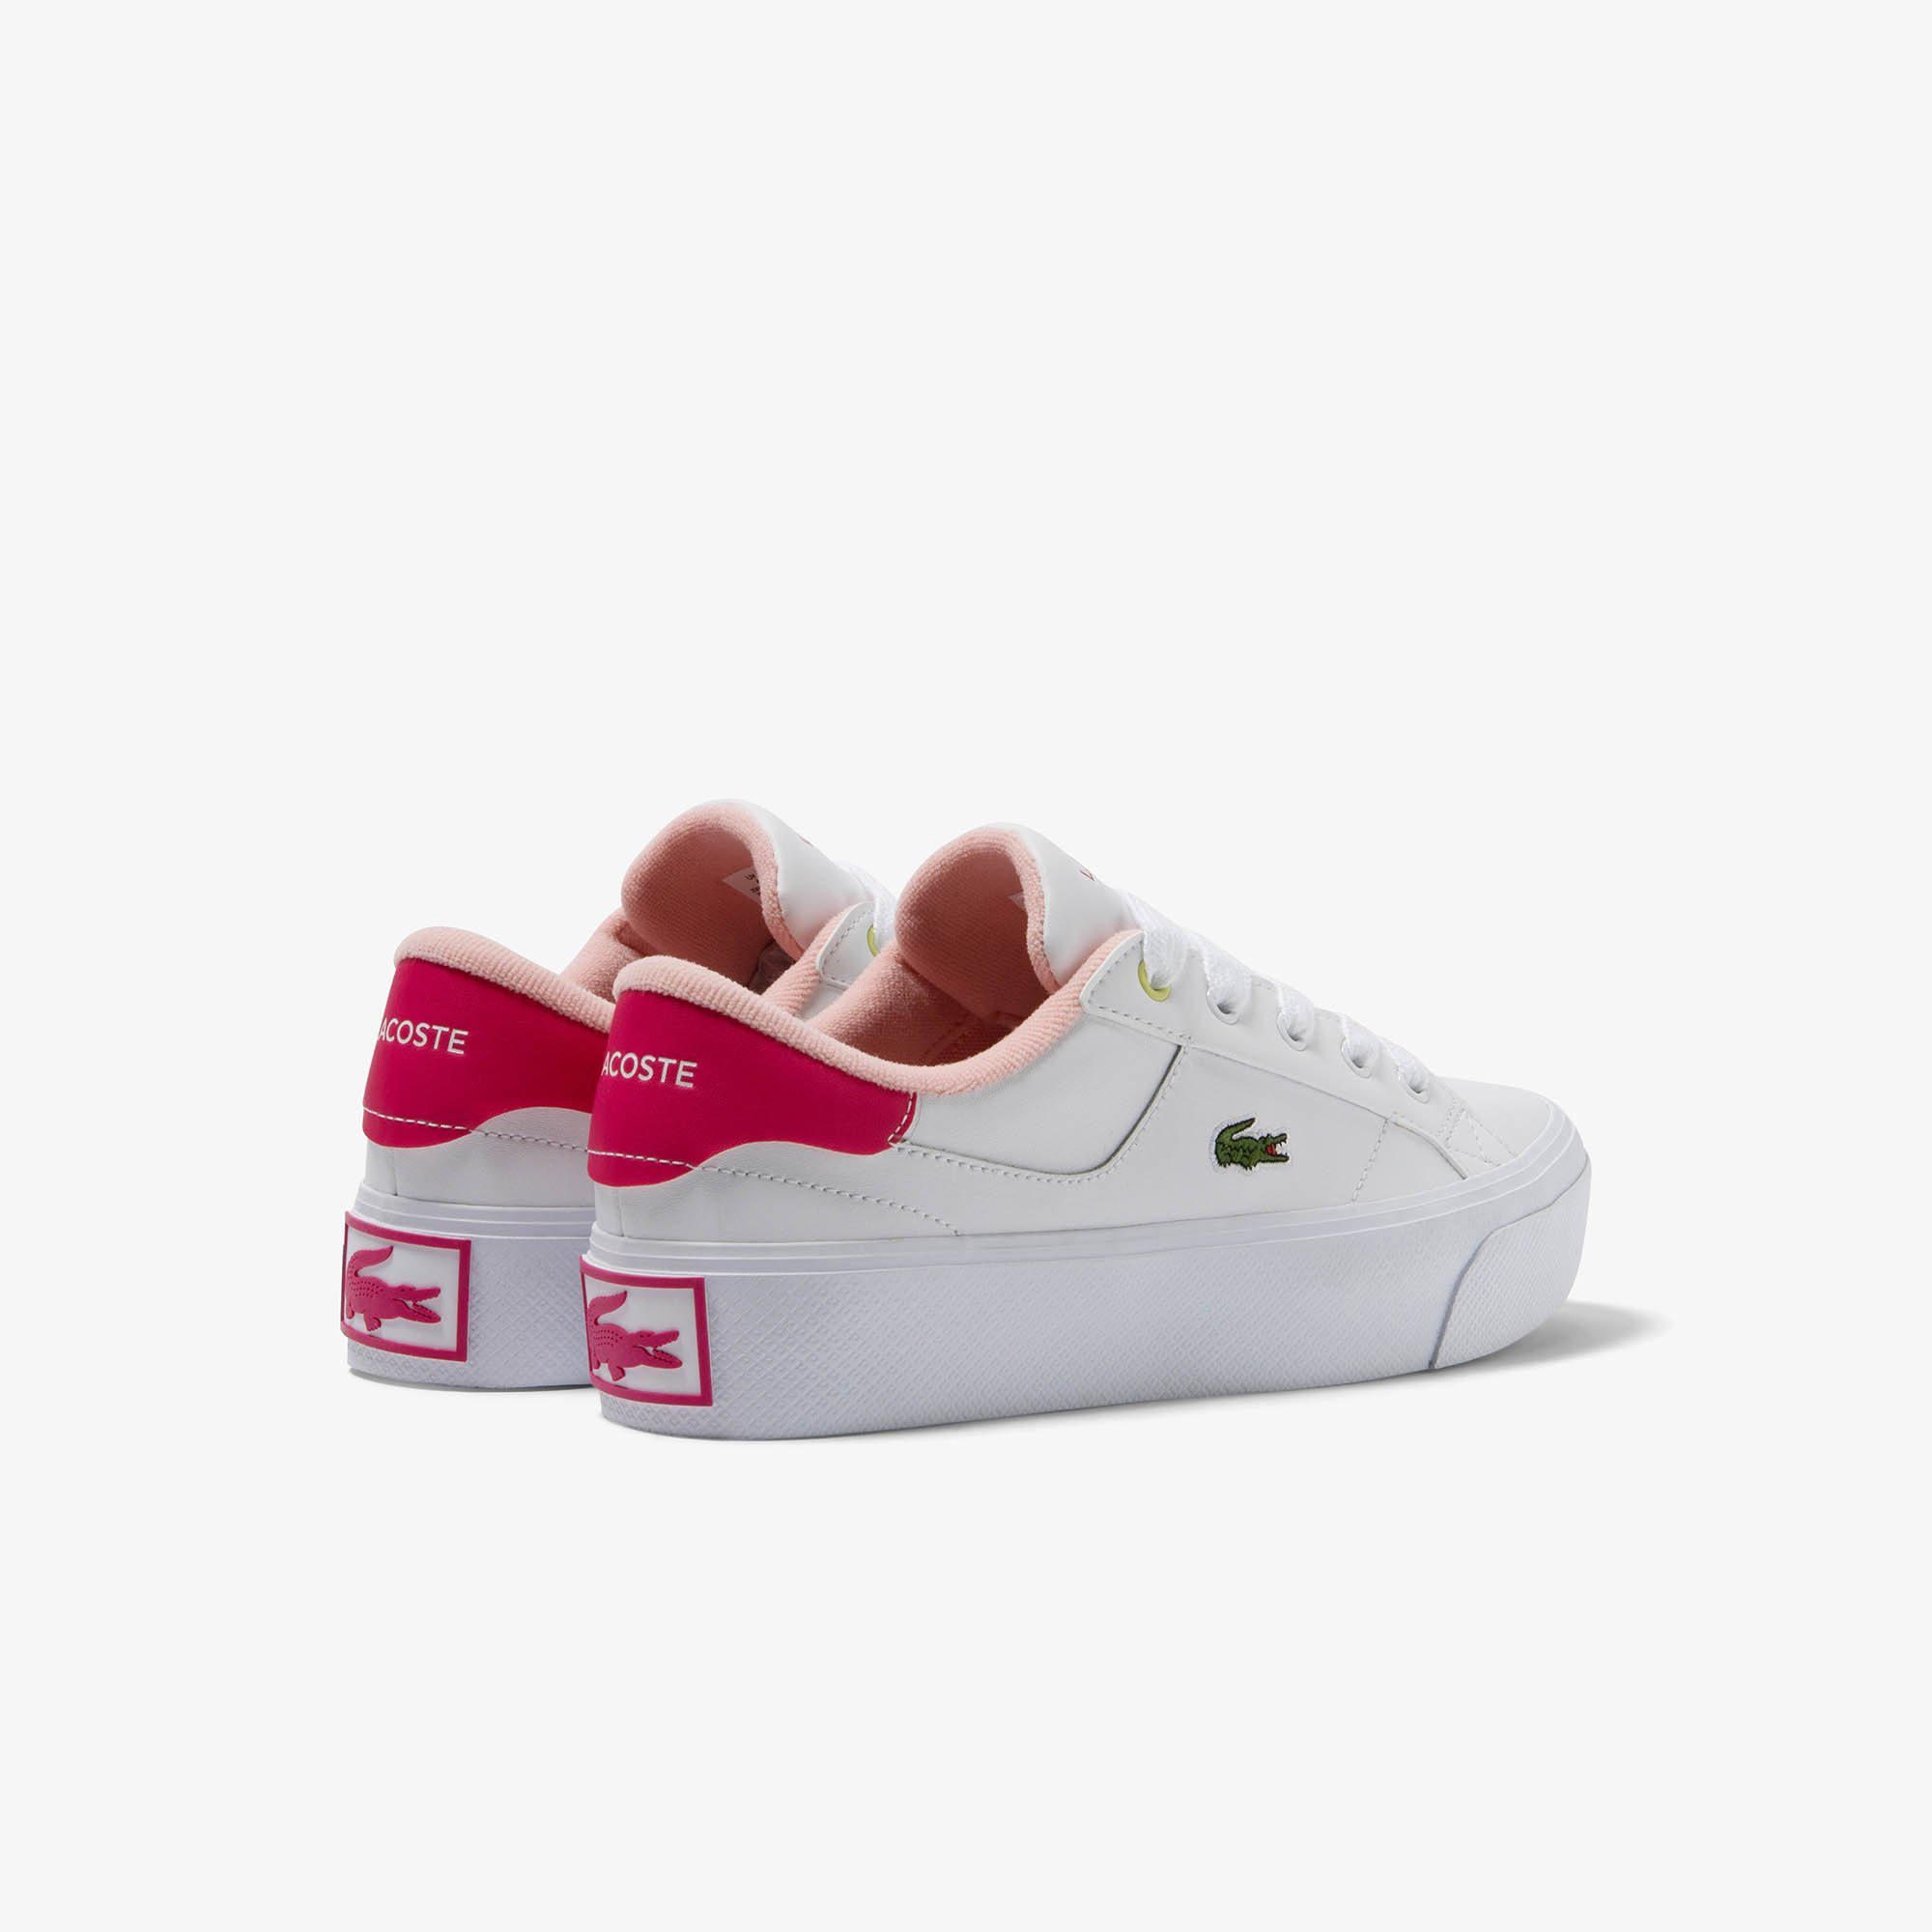 weiß-pink Sneaker Lacoste 2 ZIANE 223 CFA PLATFORM